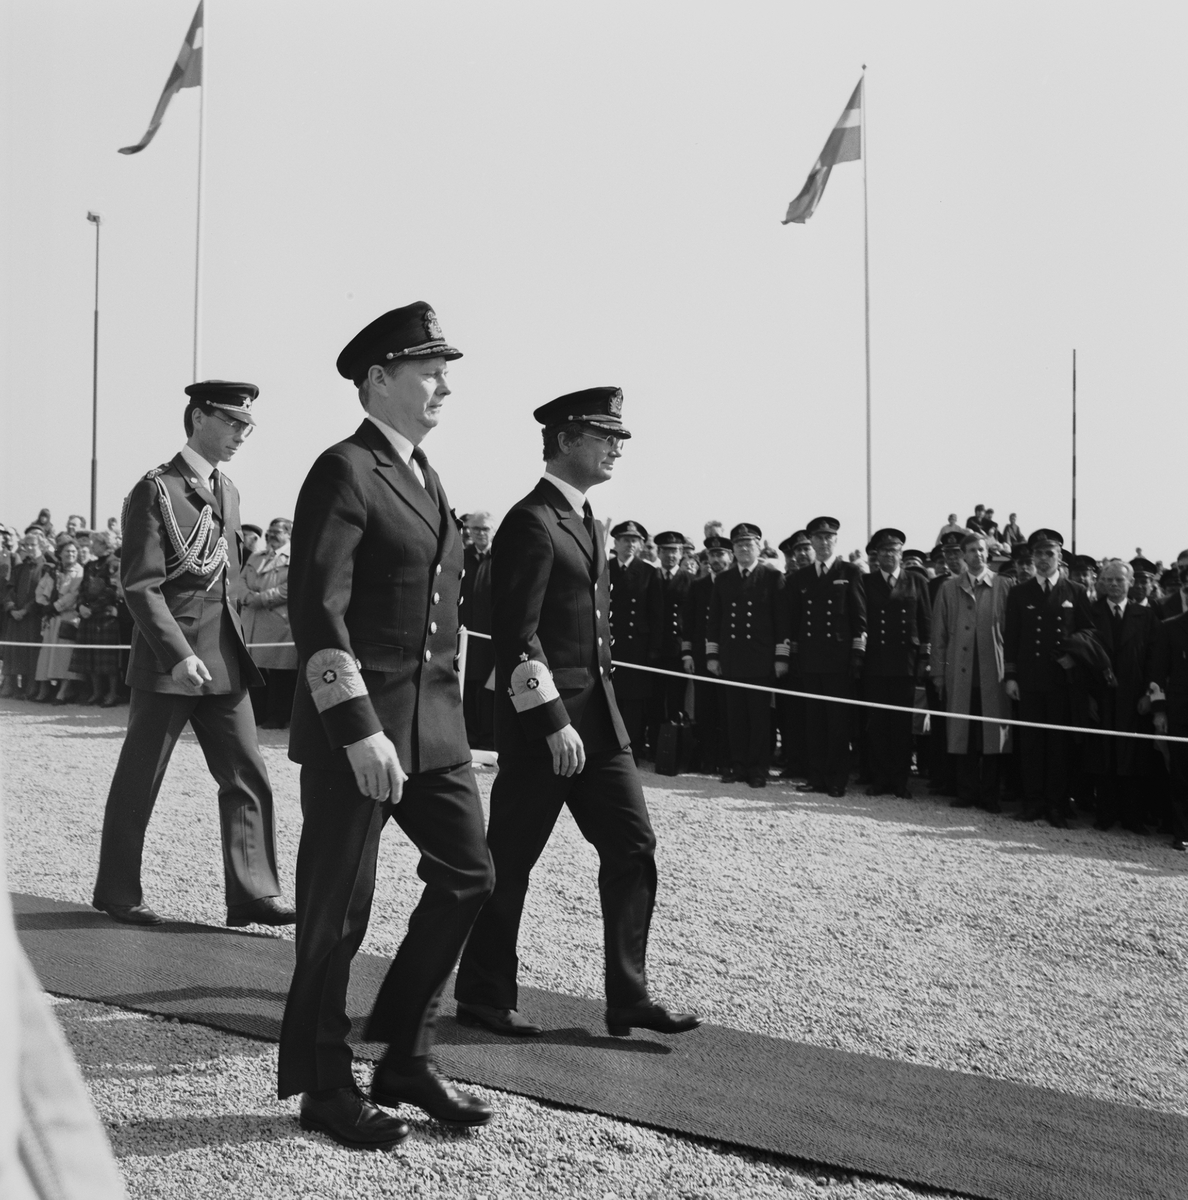 Marinchefen, viceamiral Bengt Schuback och kung Carl XVI Gustaf i amiralsuniform skrider över röda mattan under en sjösättningsceremoni. I bakgrunden syns en åskådarmängd av civila och militärer.